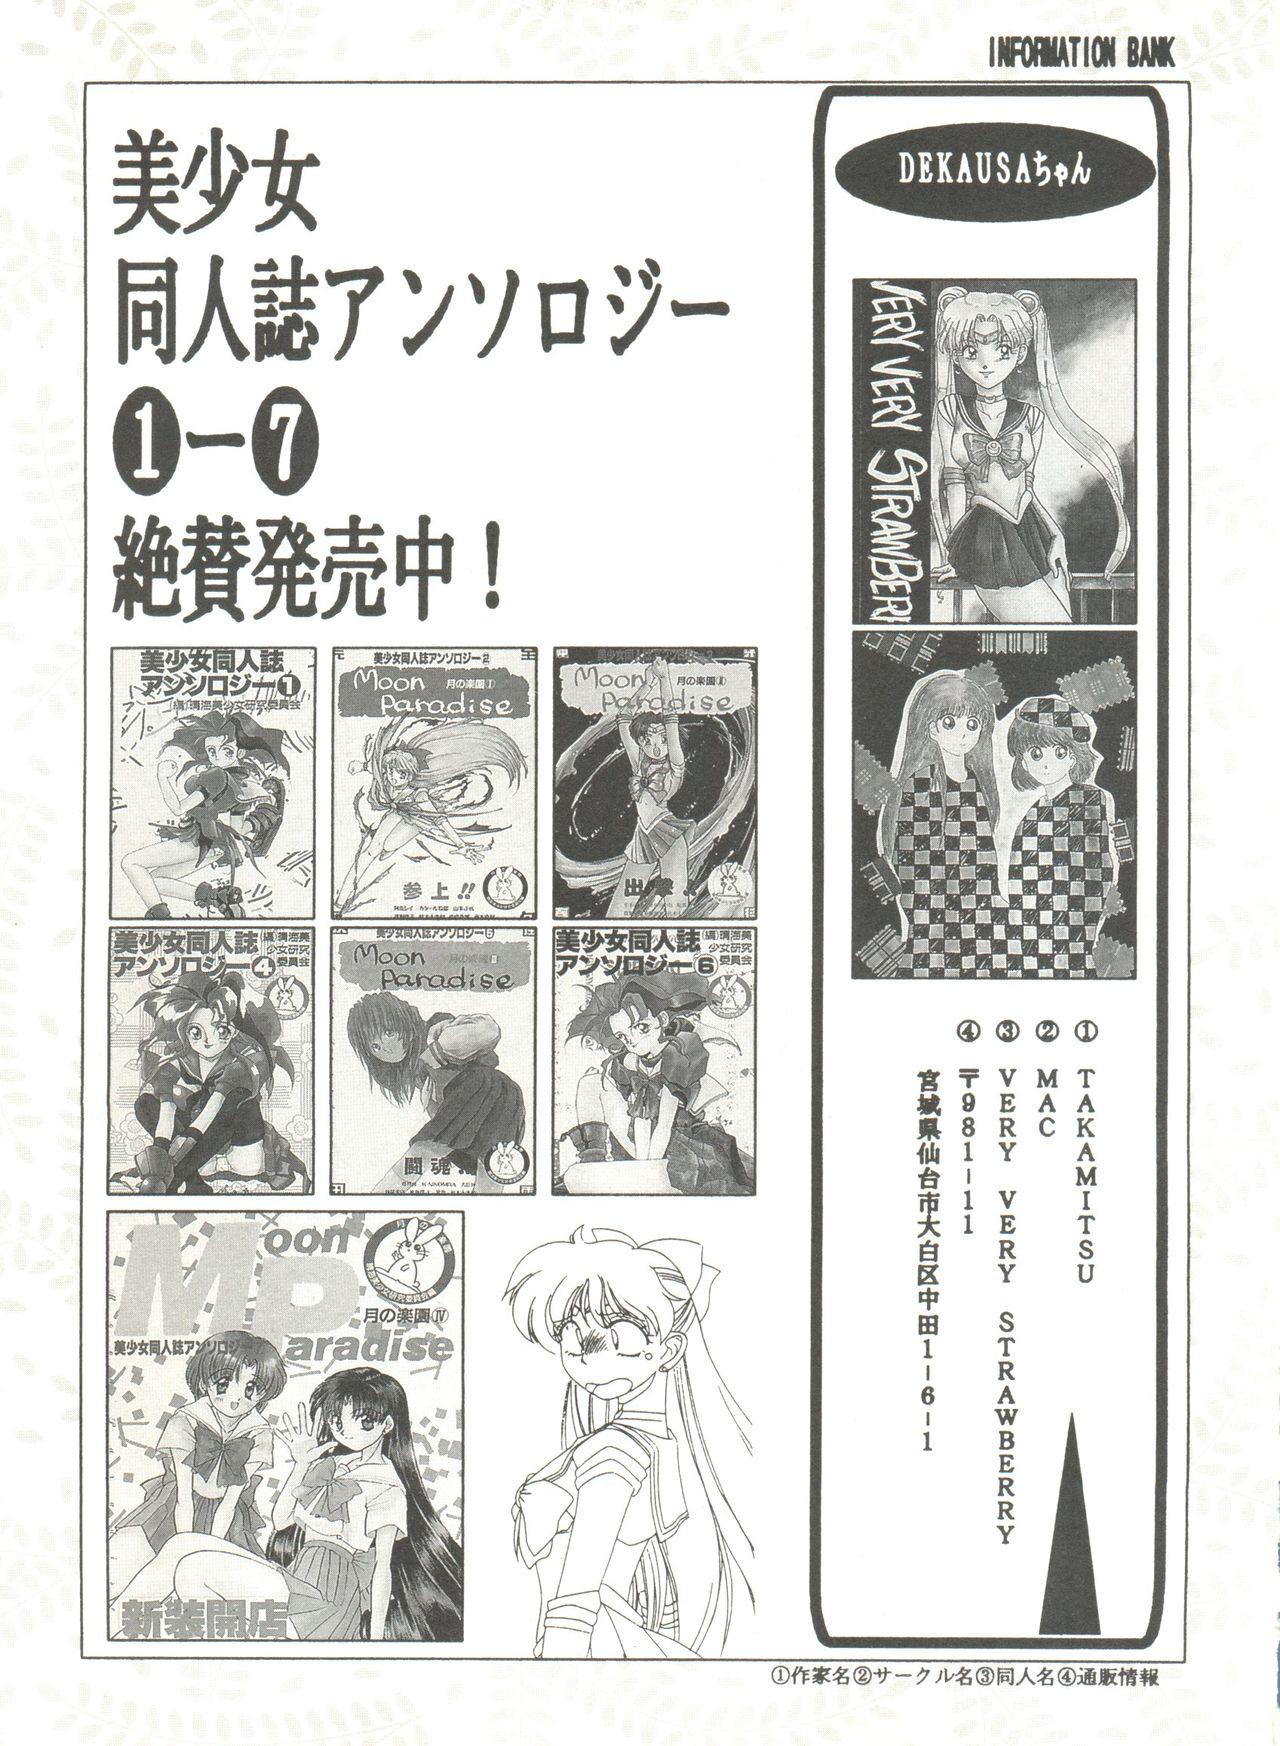 Bishoujo Doujinshi Anthology 8 - Moon Paradise 5 Tsuki no Rakuen 143